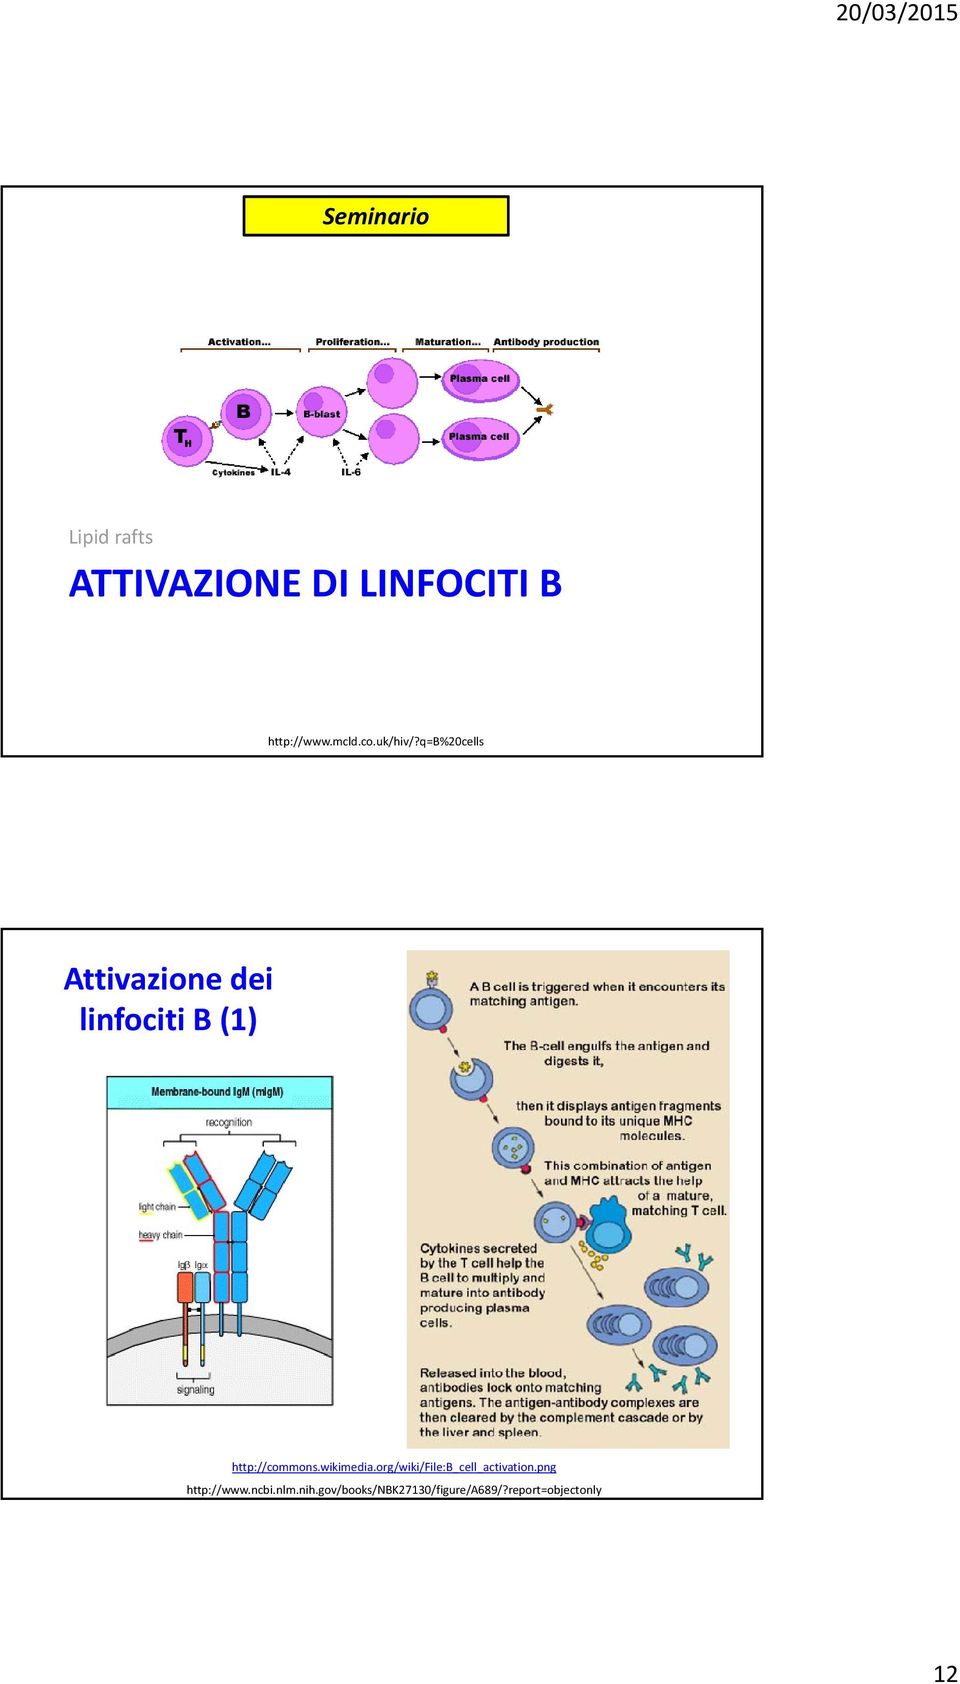 q=b%20cells Attivazione dei linfociti B (1) http://commons.